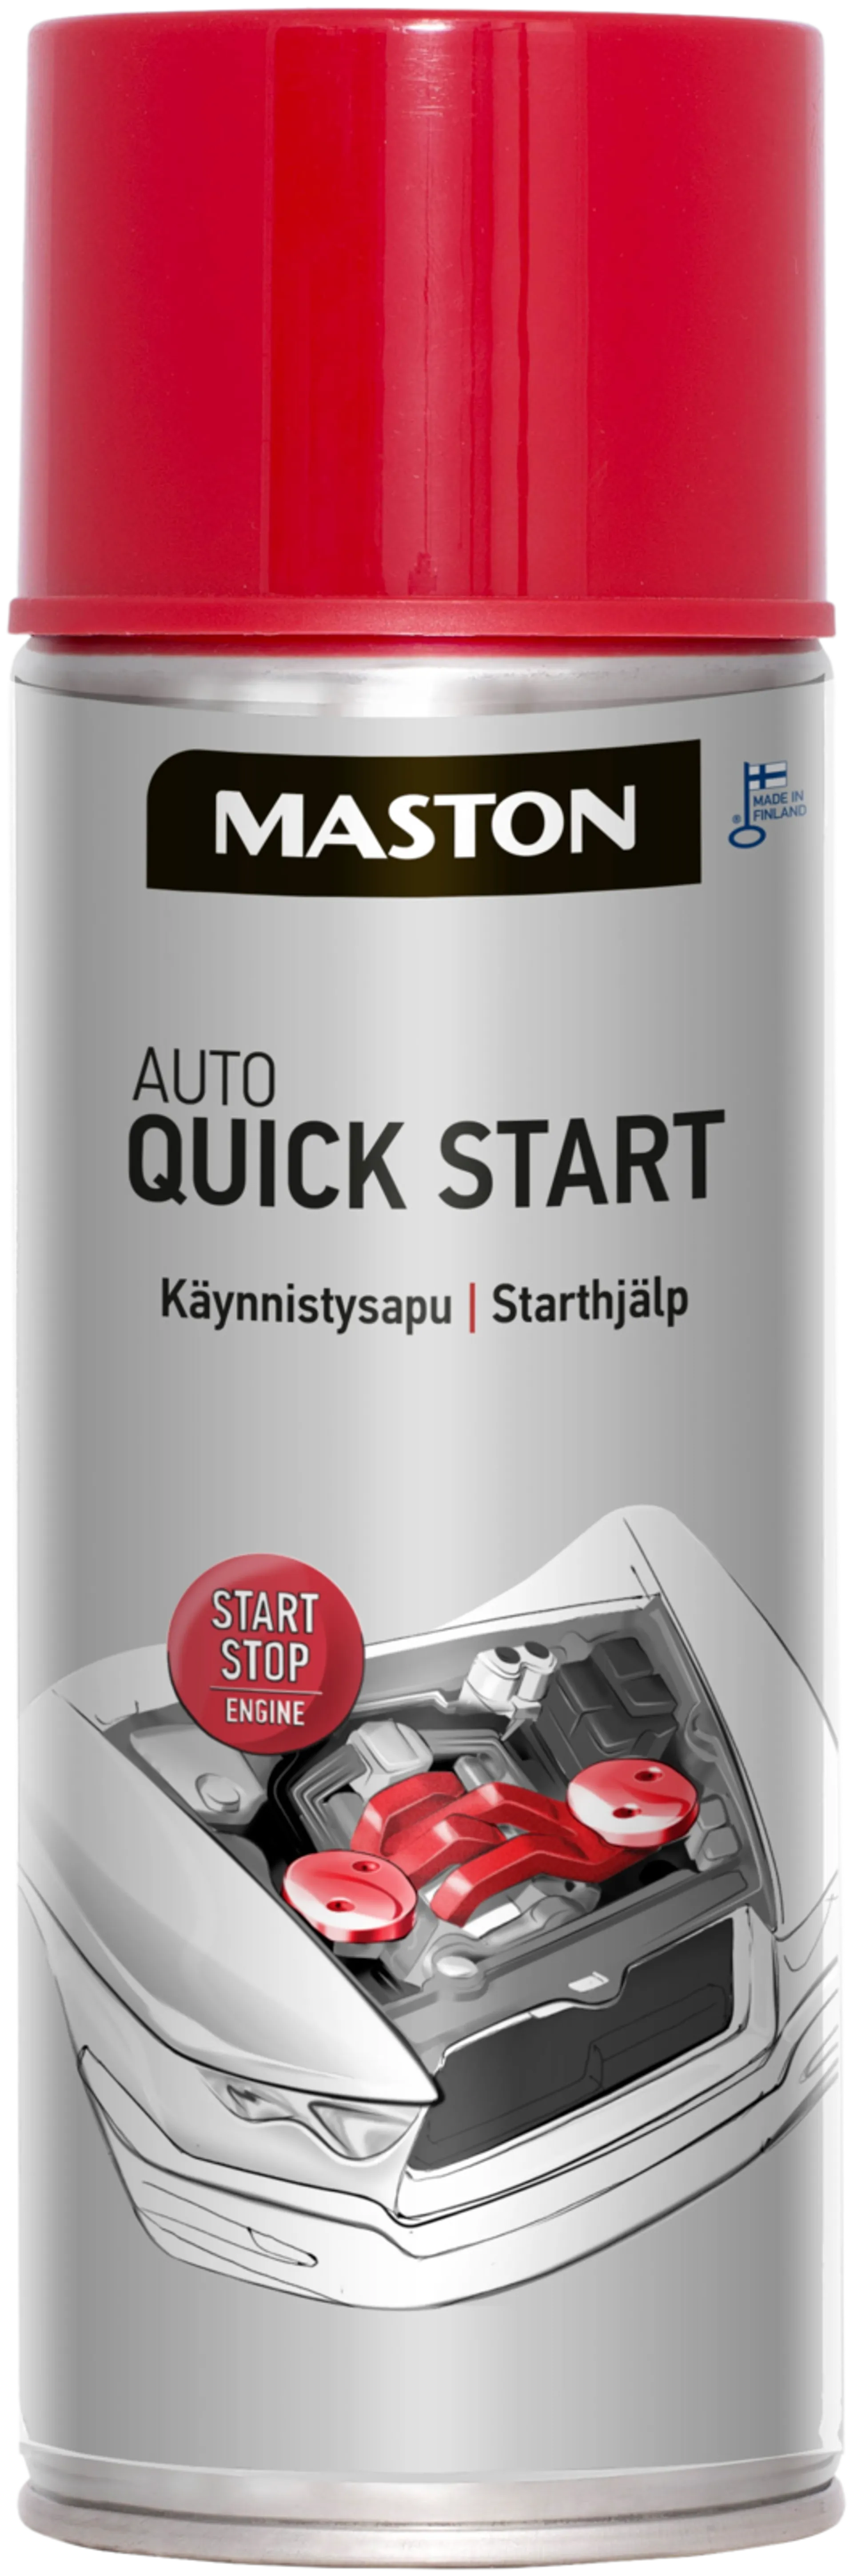 Spray Quick Start käynnistysapu spray moottorille 400ml